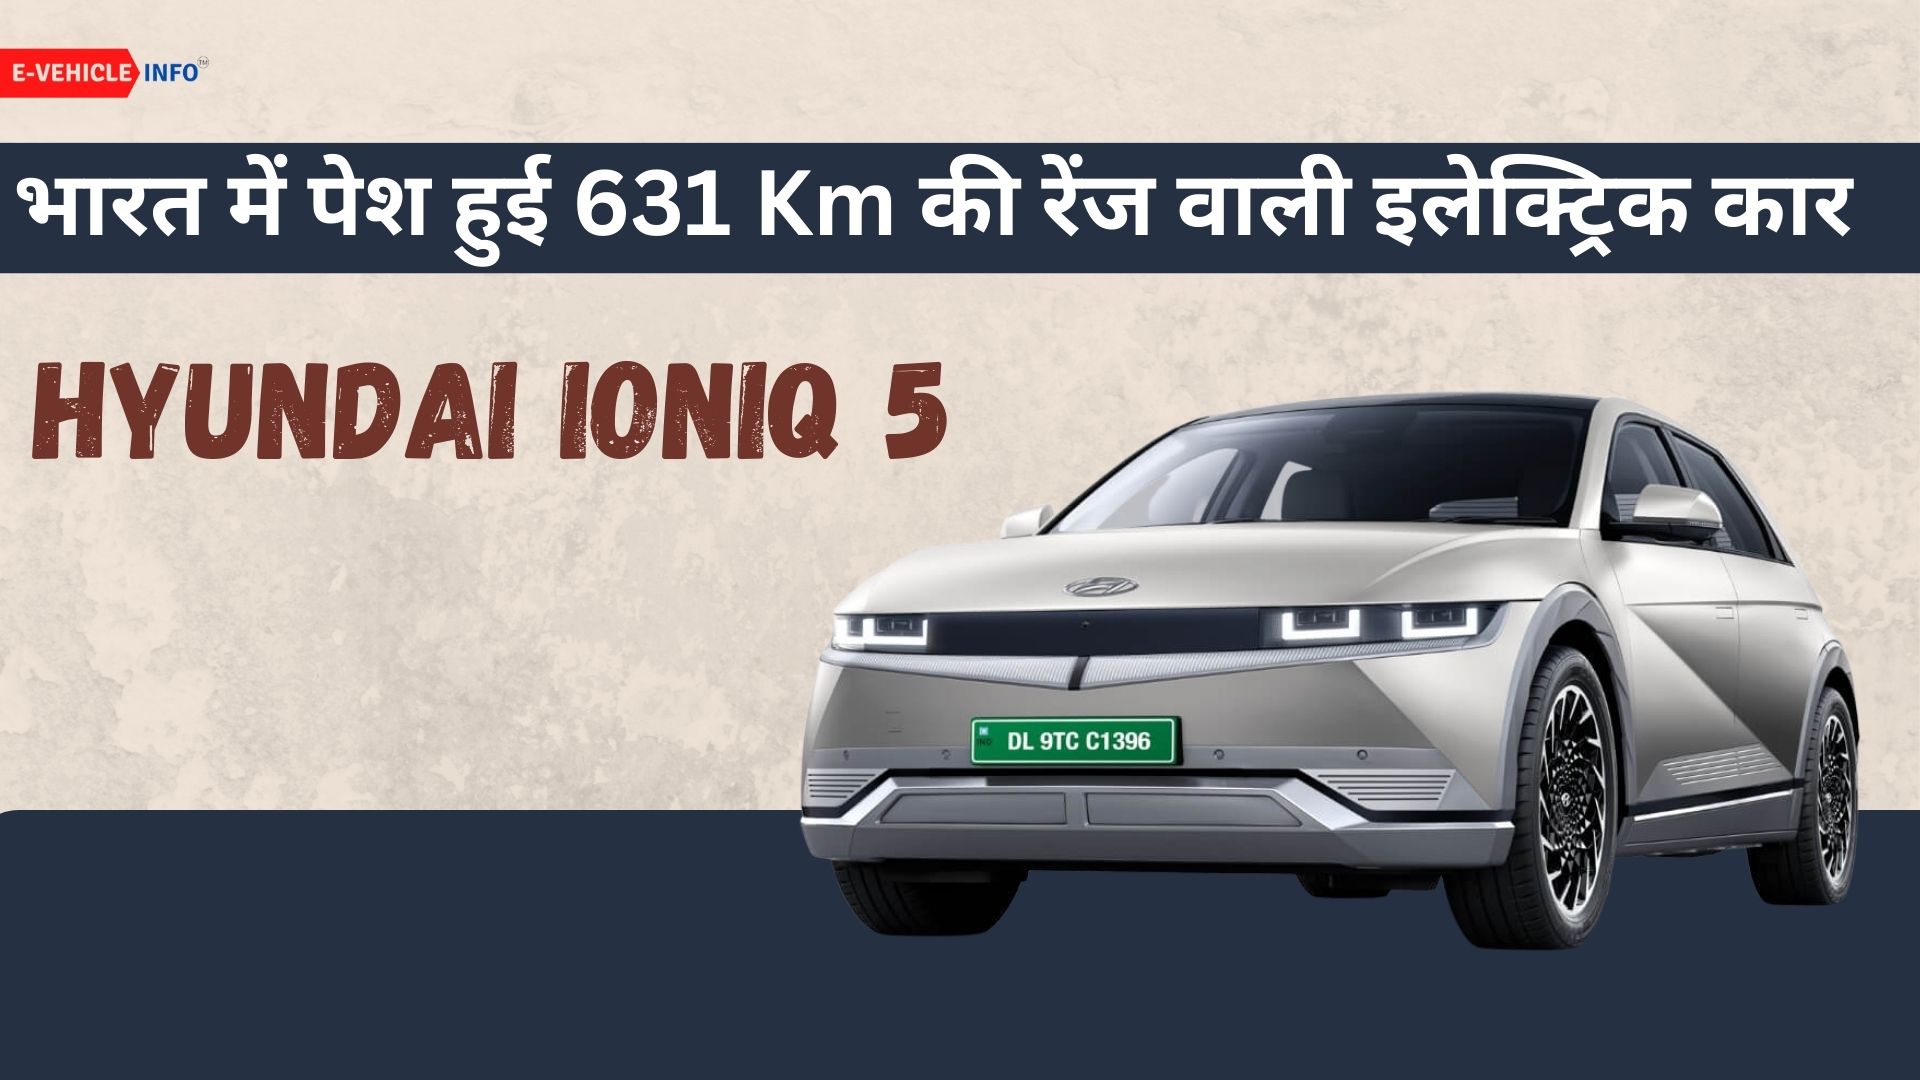 https://e-vehicleinfo.com/hindi/hyundai-ioniq-5-unveiled/